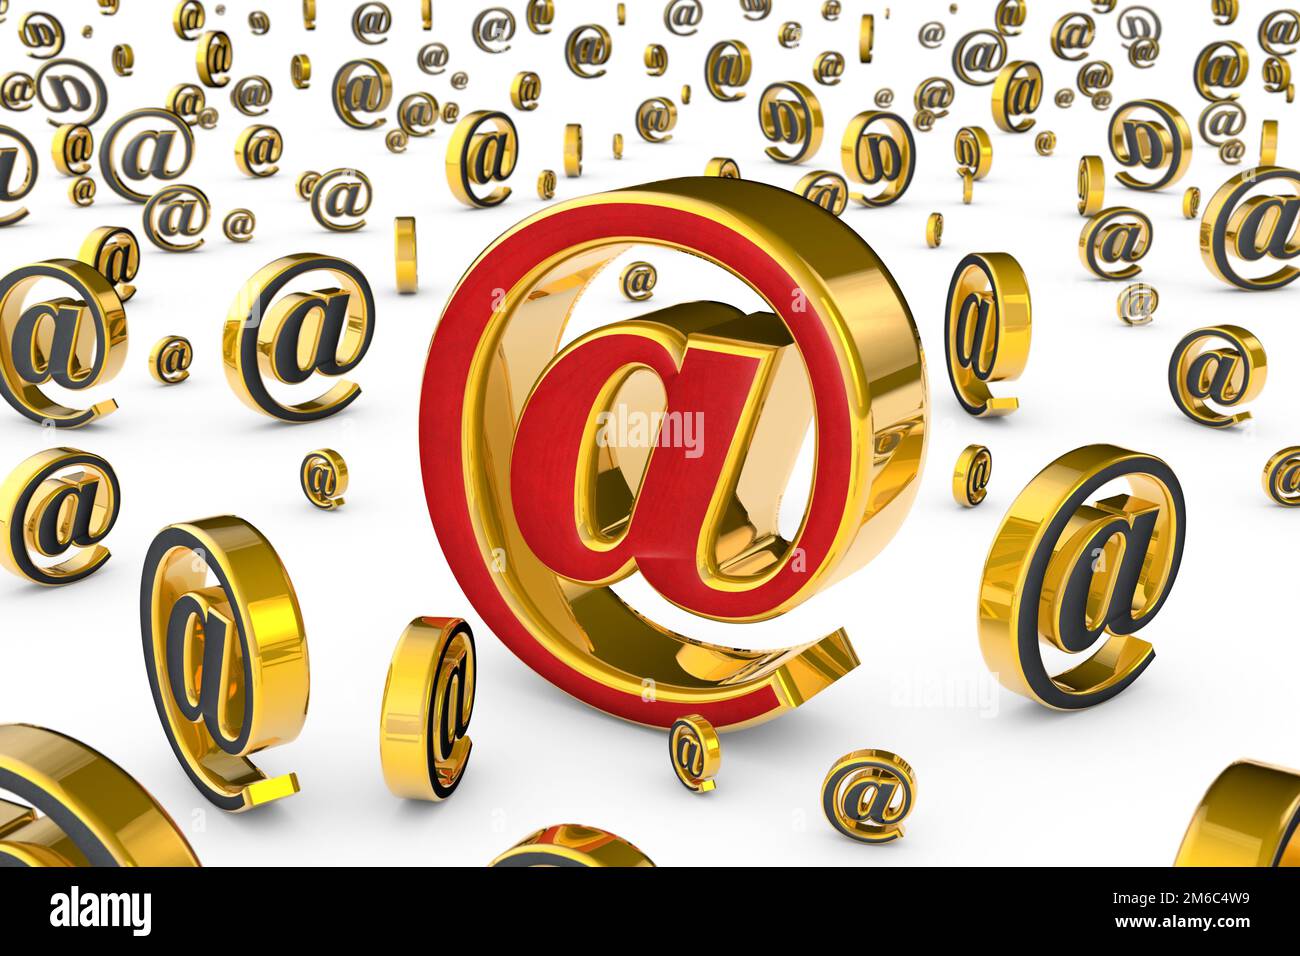 L'indirizzo Internet principale (@). Un singolo simbolo e-mail rosso dorato circondato da molti simboli e-mail grigi dorati (figura 3D). Foto Stock